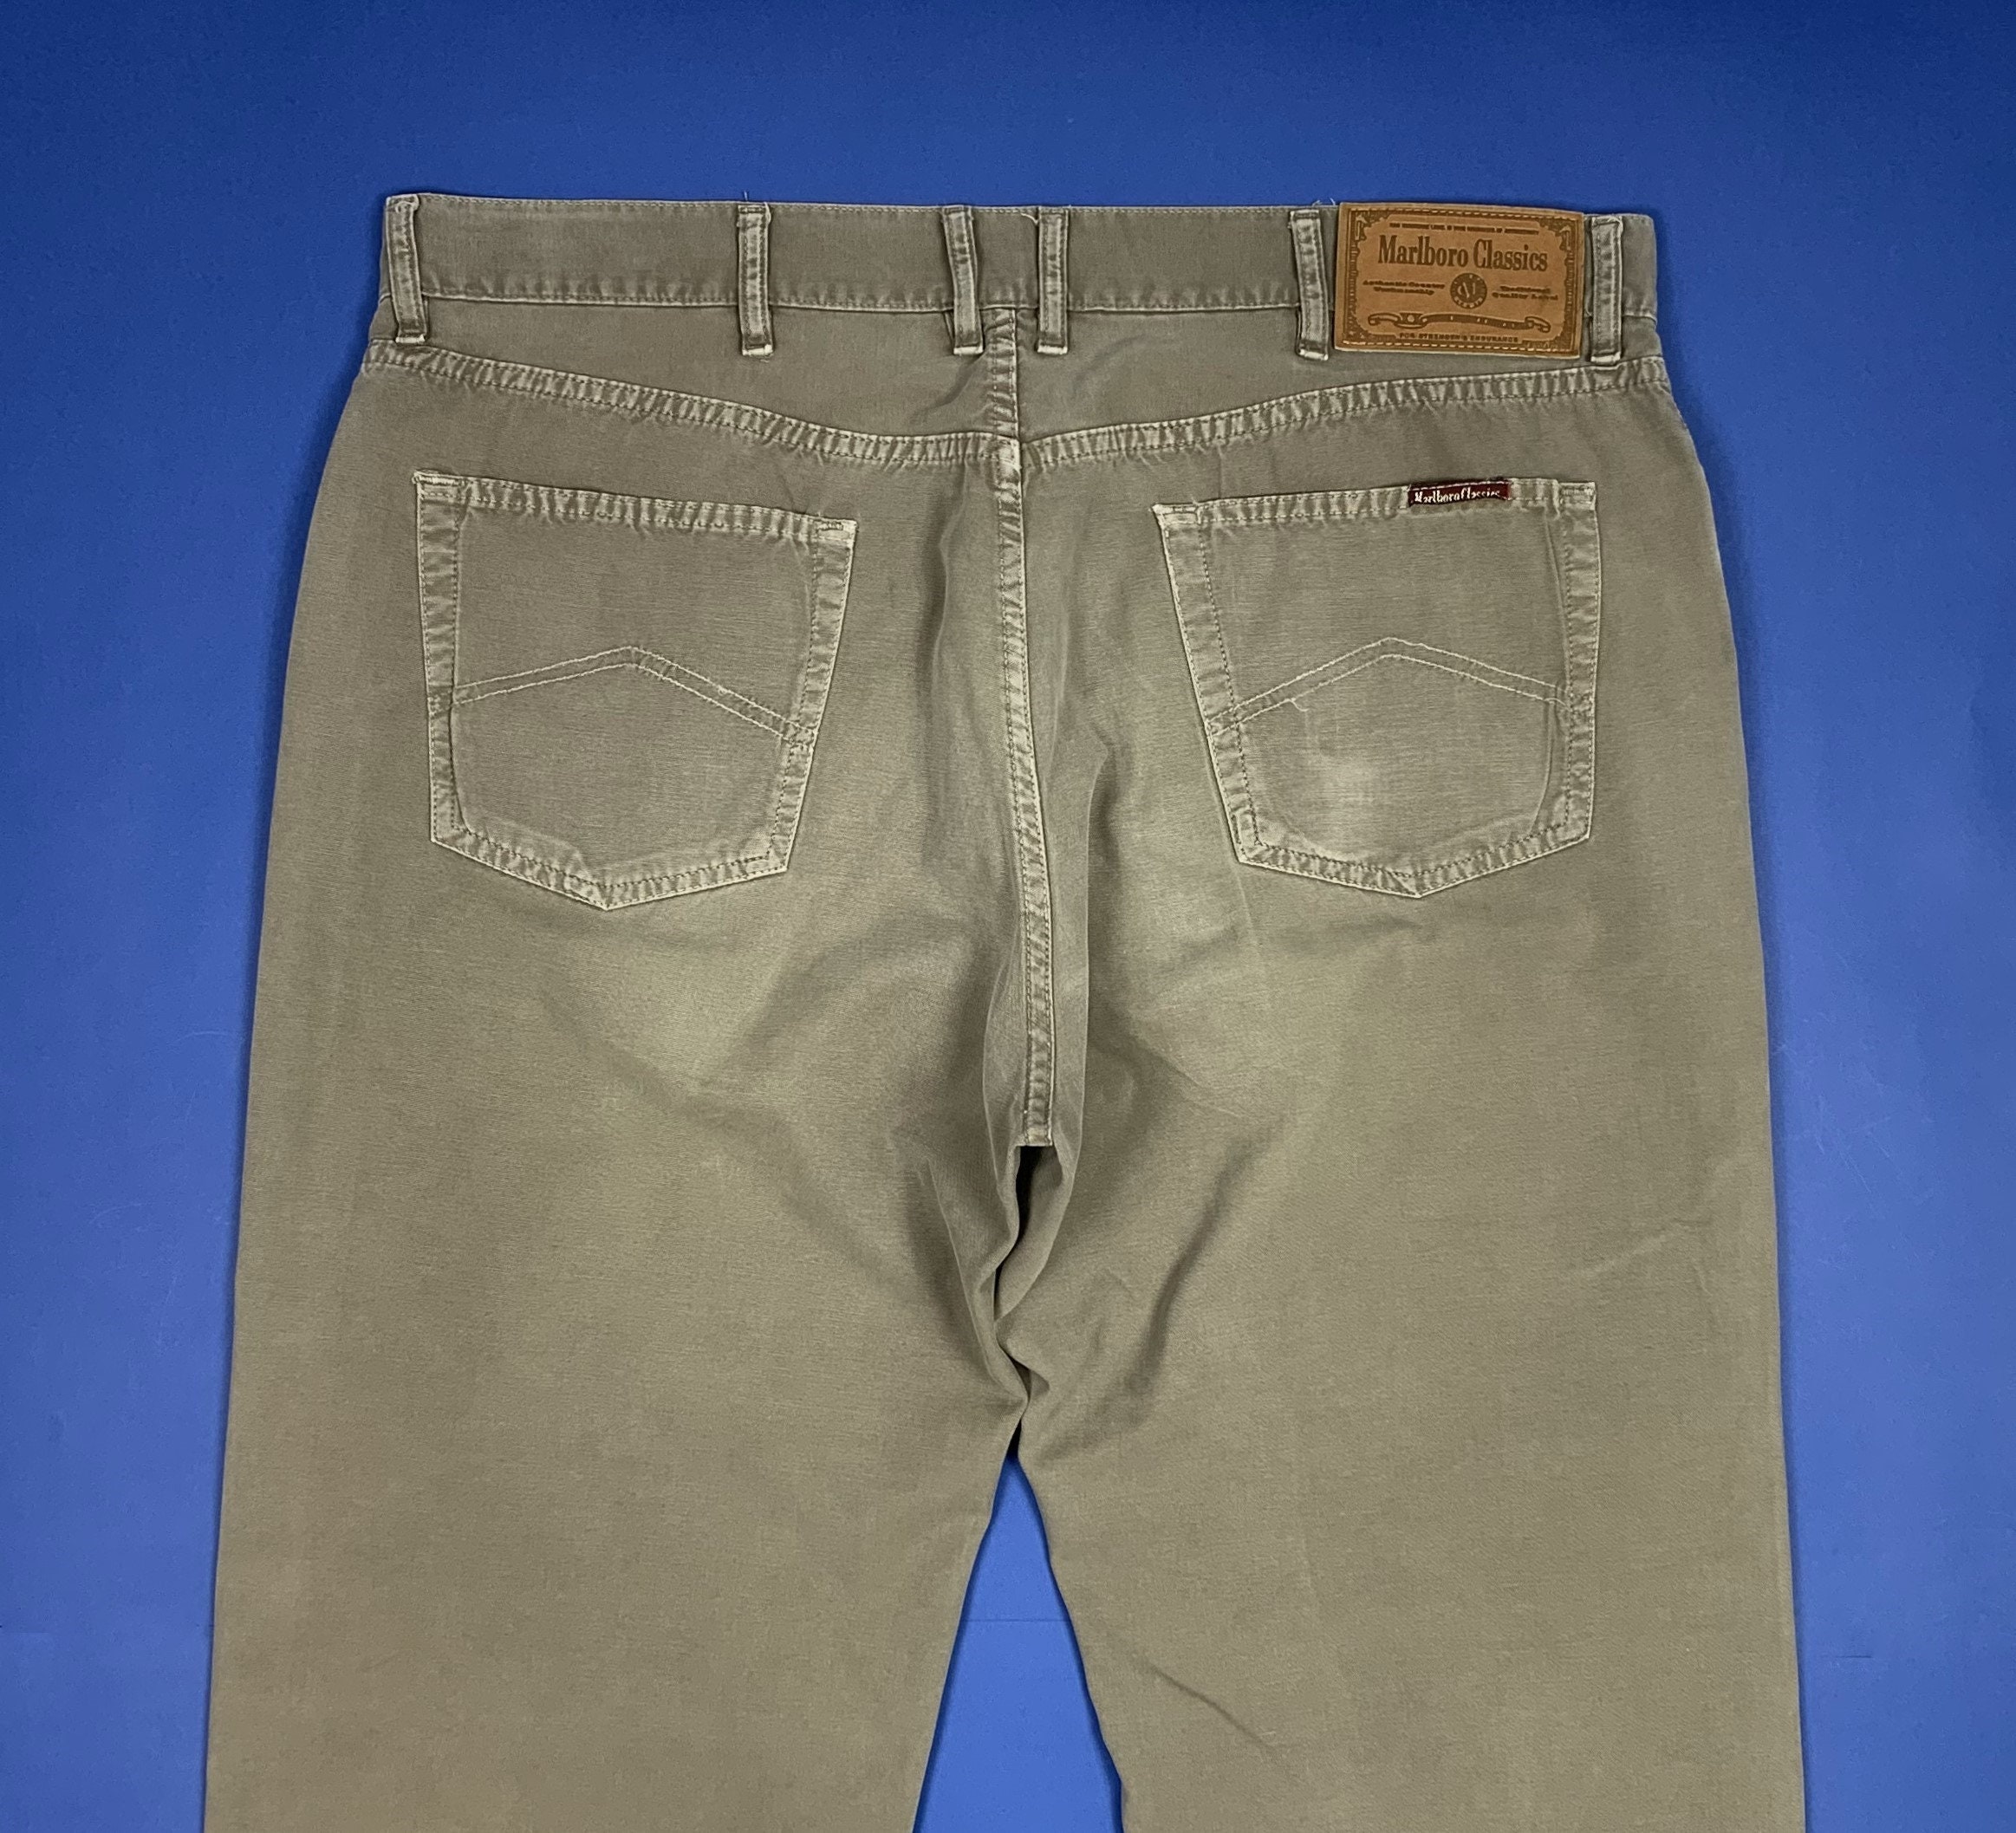 Marlboro Classics Men's Trousers Used W40 L34 Tg 54 Leg - Etsy UK